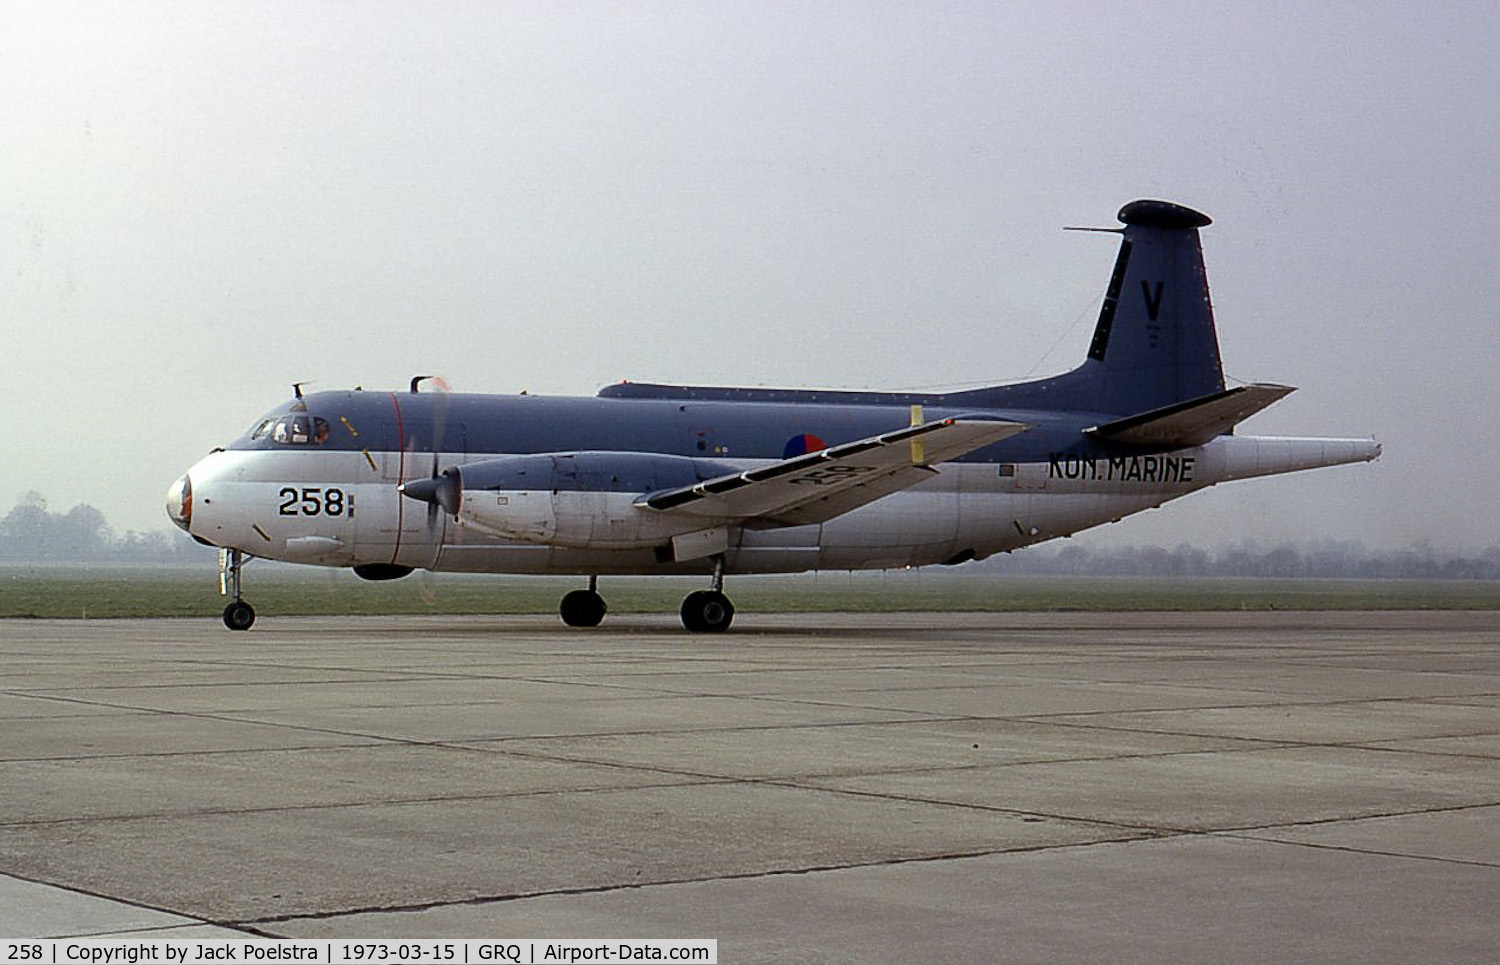 258, Breguet SP-13A Atlantic C/N 65, 258 V of 321 Sqdn